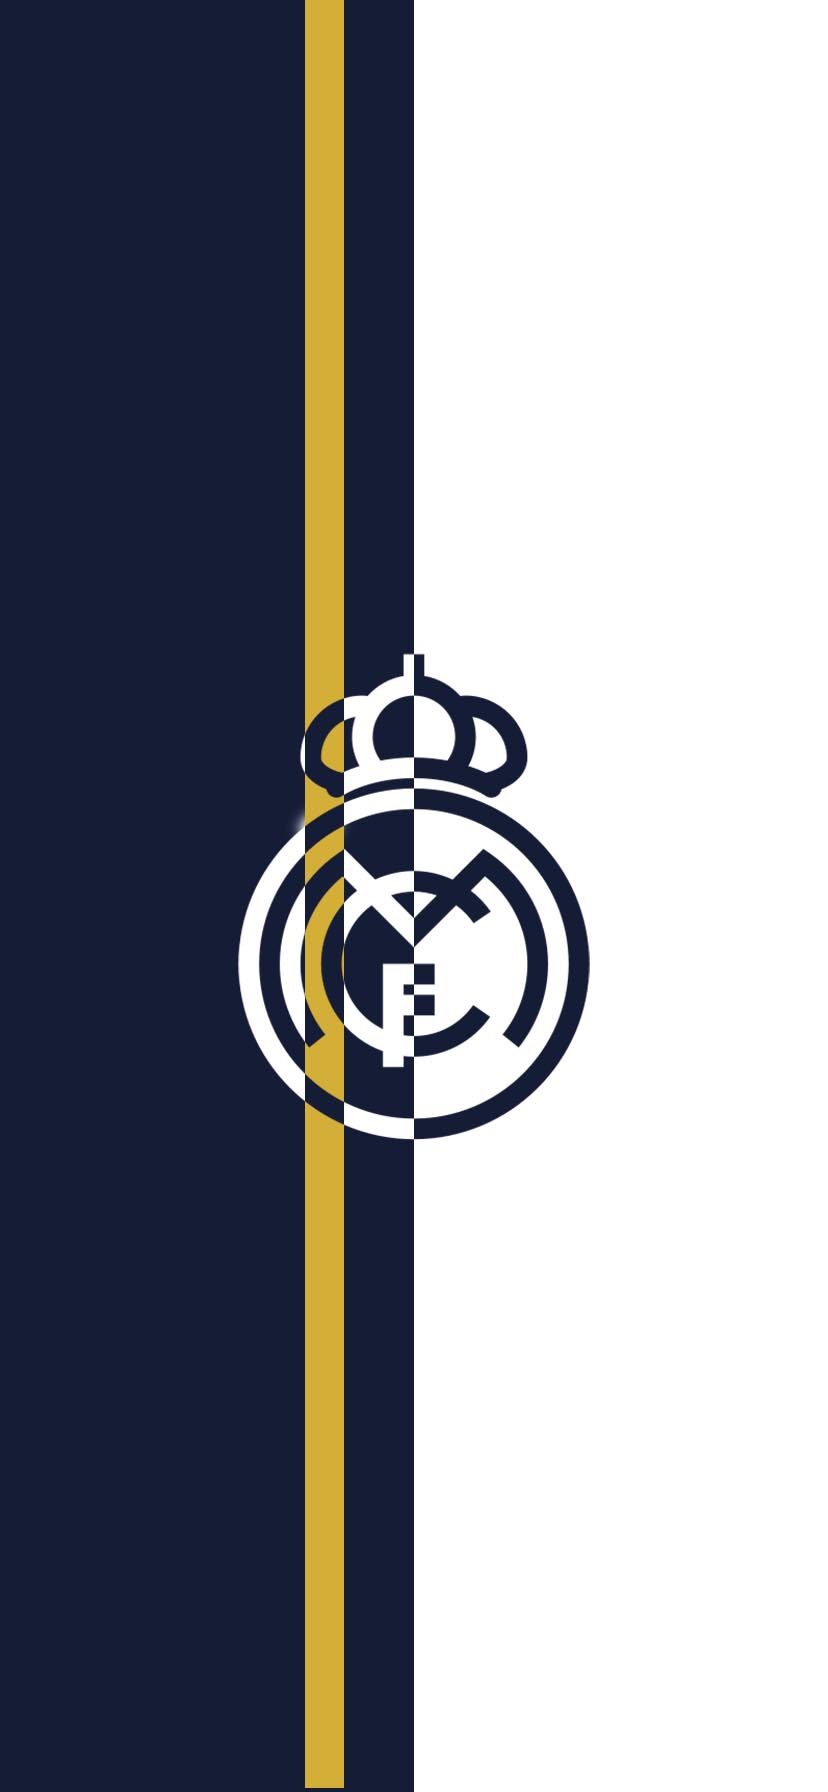 Real Madrid Wallpaper 4k - 828x1792 Wallpaper 